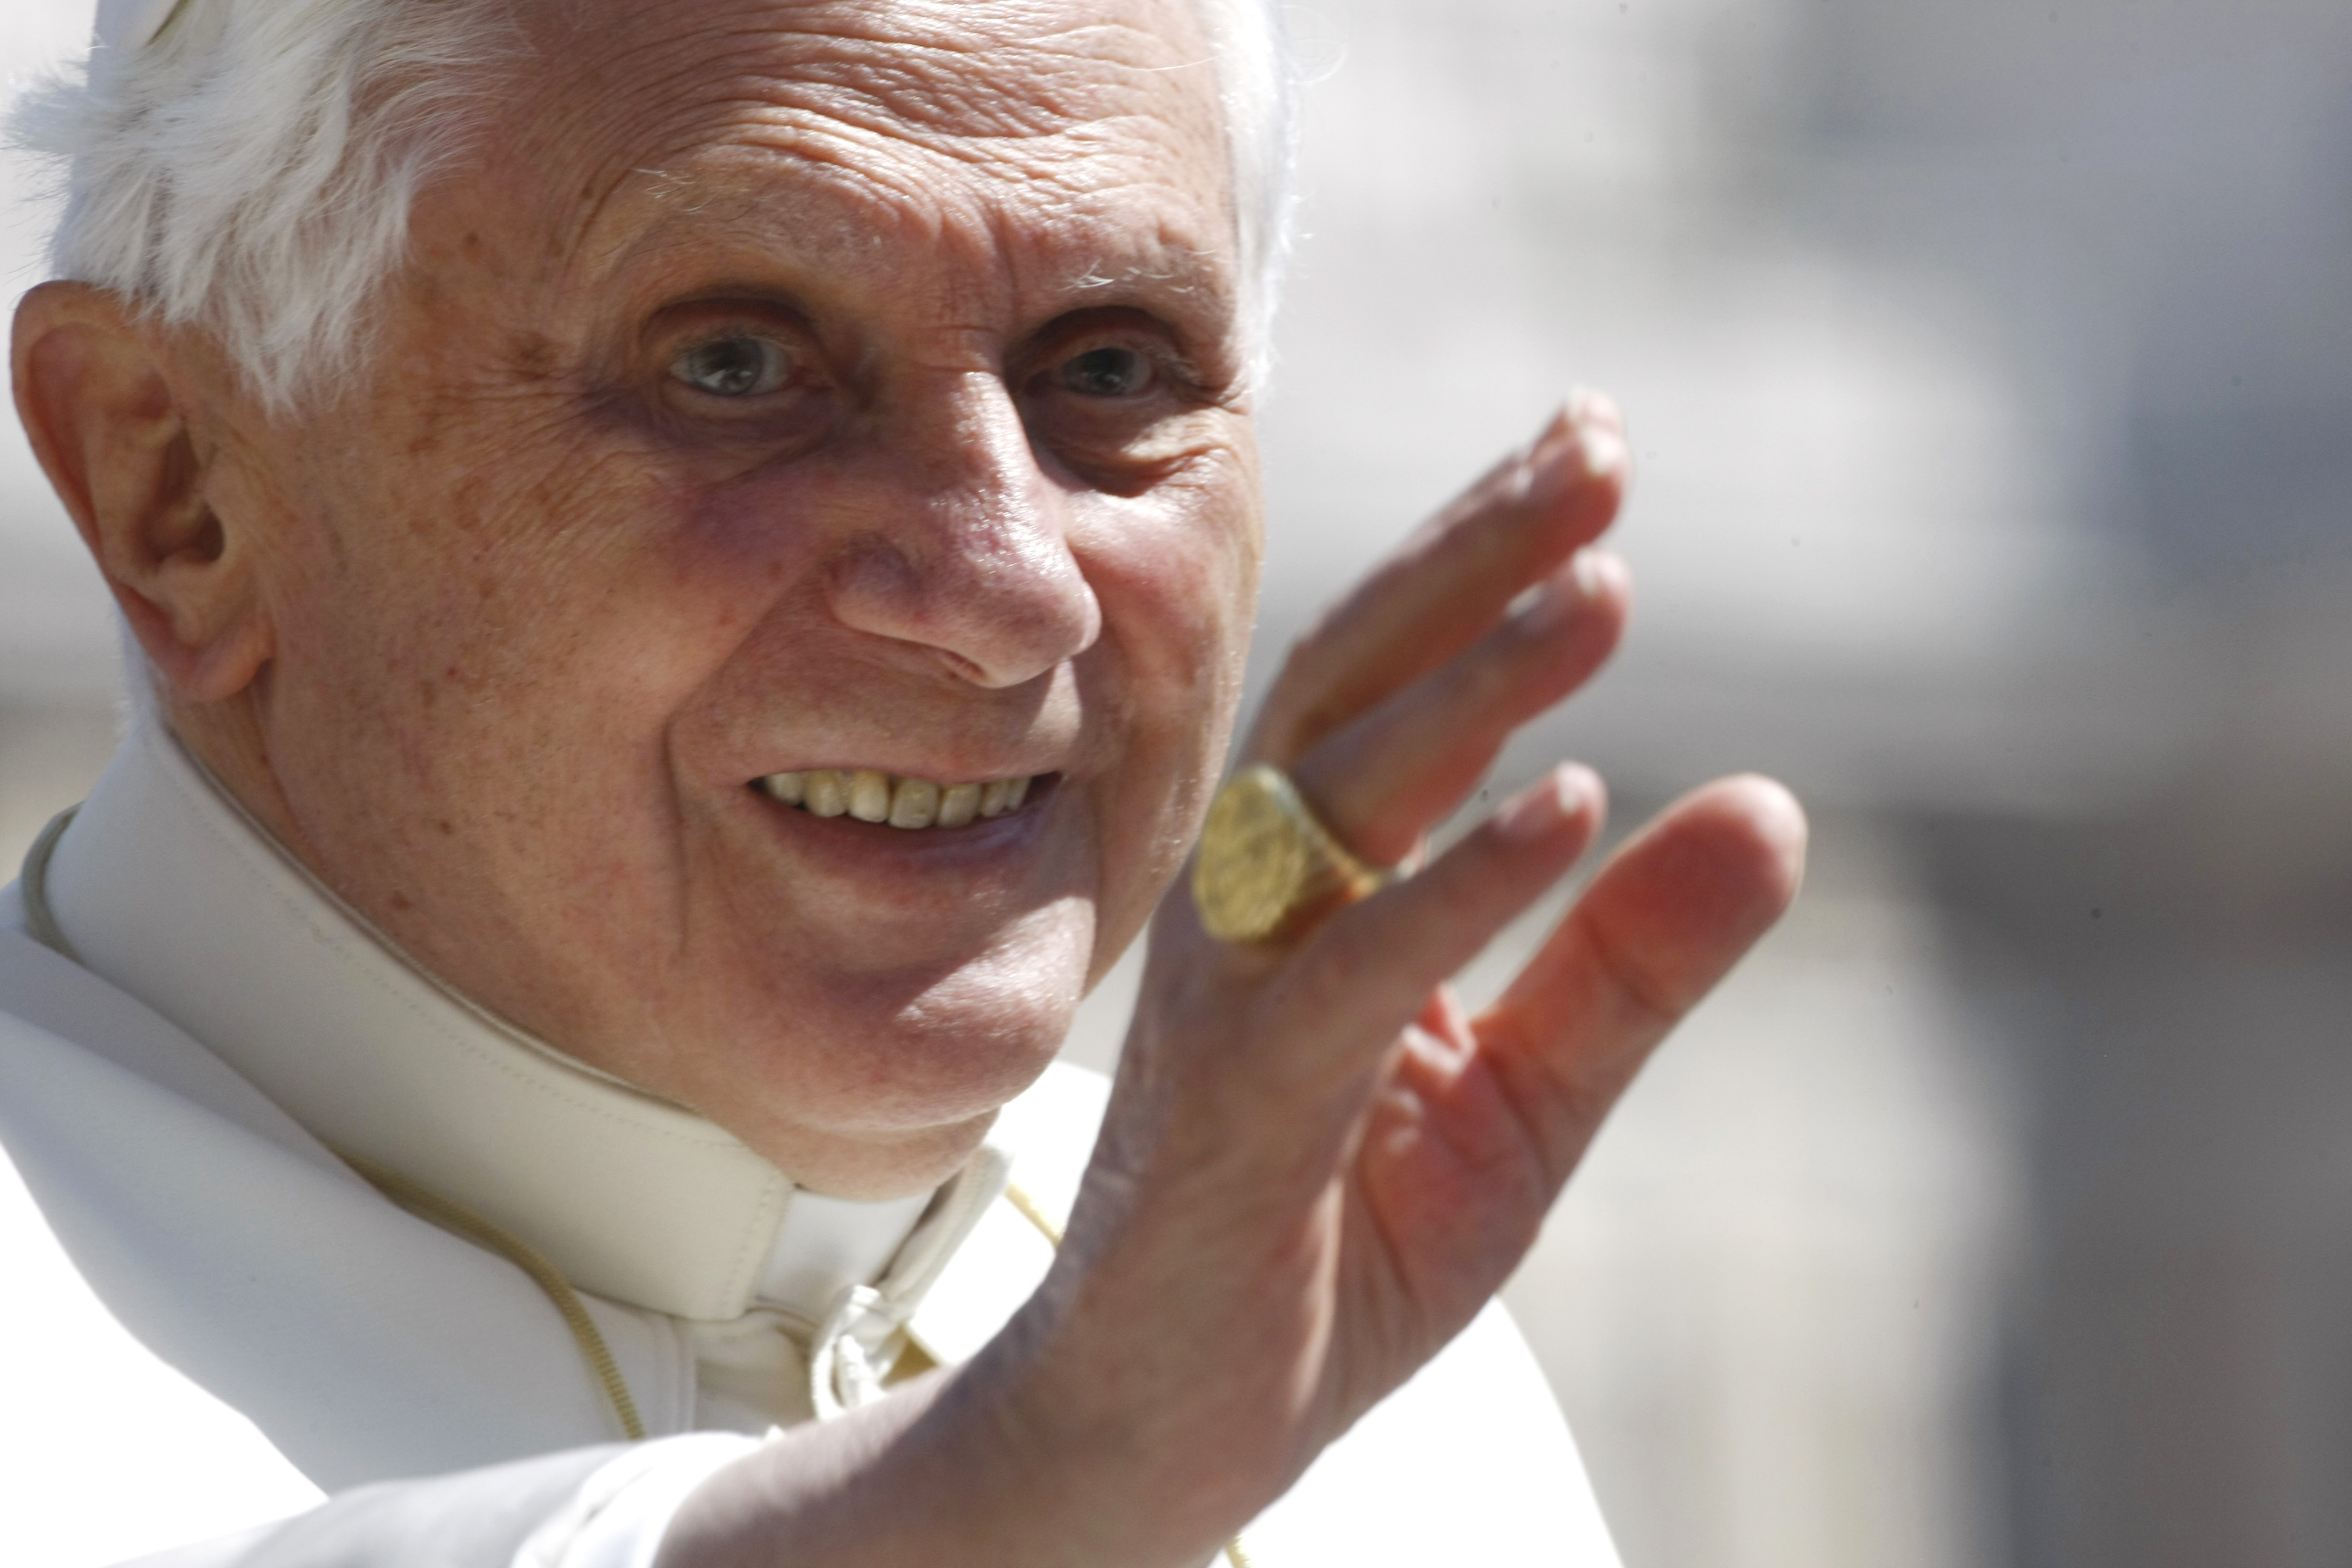 Påven välsignade två män i tron om att de var präster. I själva verket var männen skådespelare i bögporrfilmen "Skandal i Vatikanen".